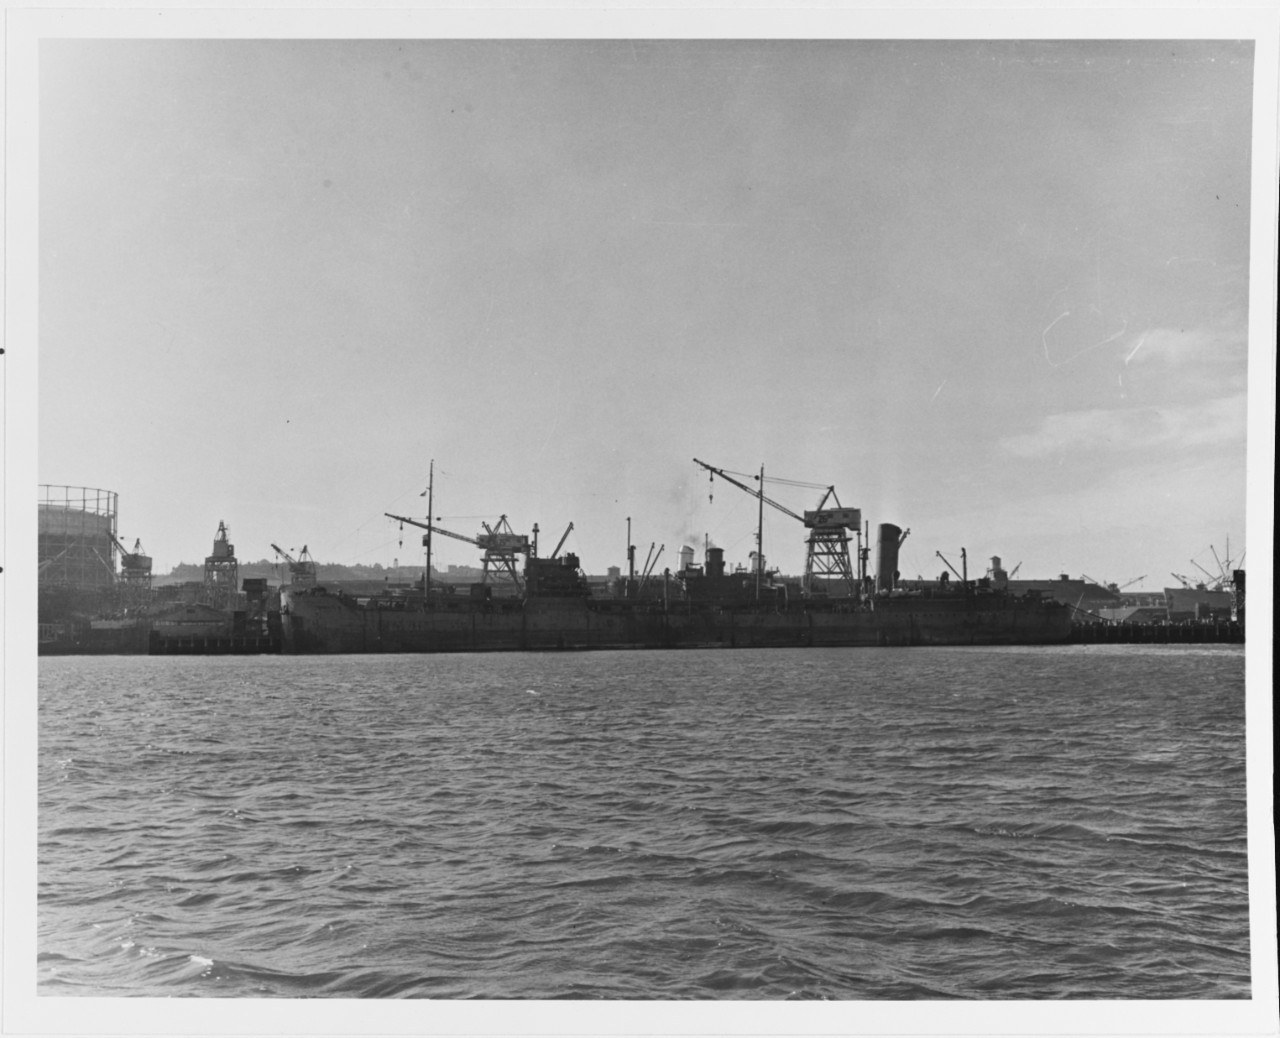 S.S. ONTARIOLITE (British Merchant Tanker, 1925-1949)